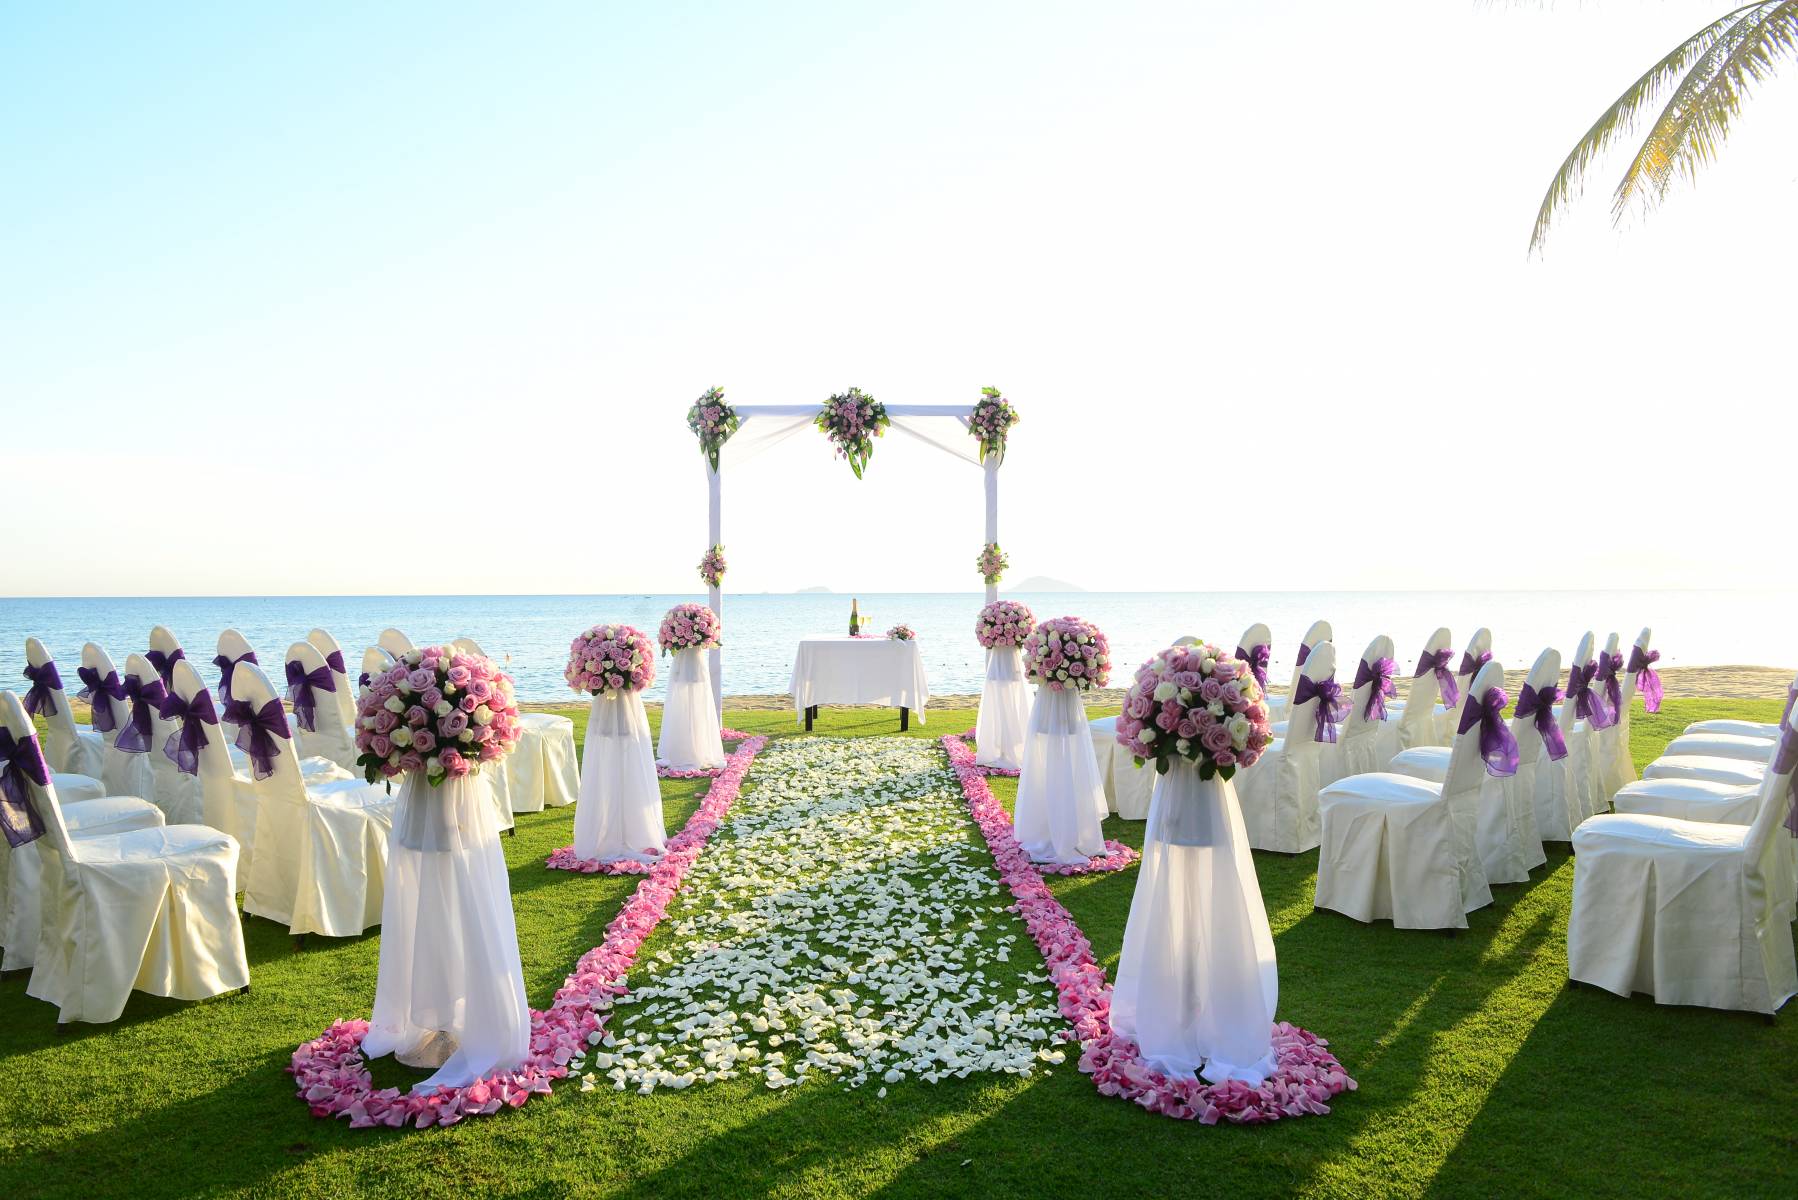 Meeting & Event - Western Style Wedding Hoi An Hotel - Hoi An Beach Resort De Vong river